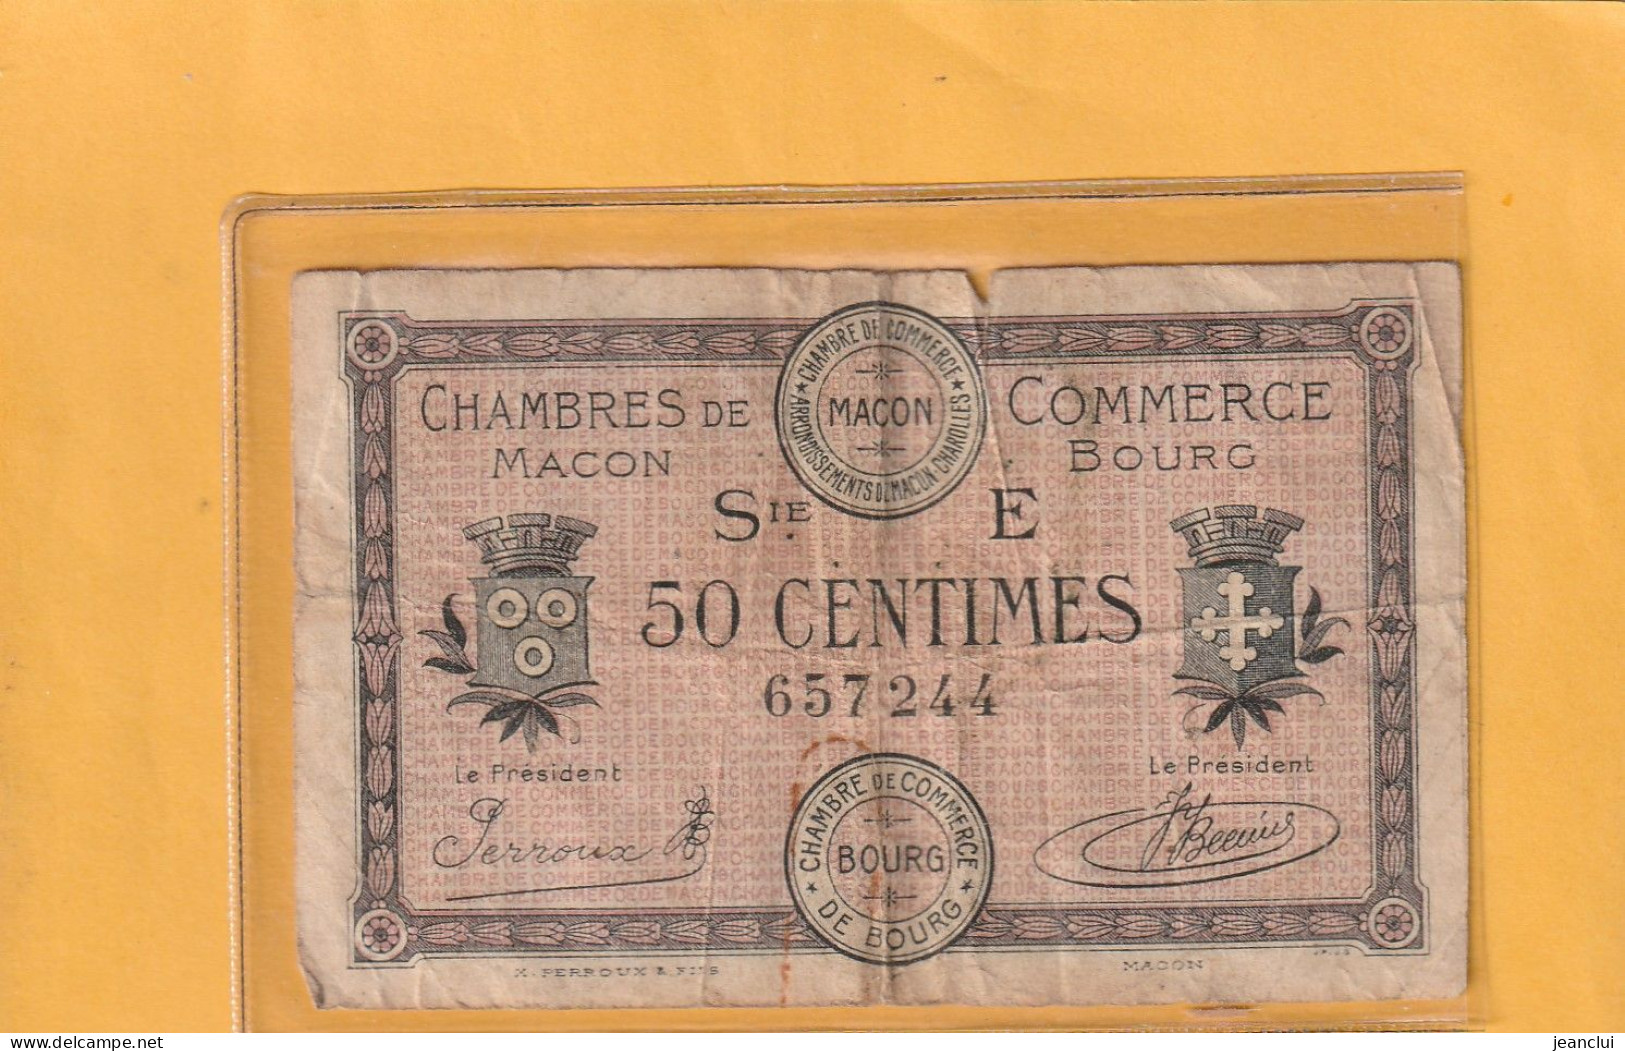 CHAMBRE DE COMMERCE DE MACON - BOURG . 50 Cts . EMISSION DU 27-4-1920 . SERIE E . N° 657244 . 2 SCANNES . BILLET USITE - Chamber Of Commerce